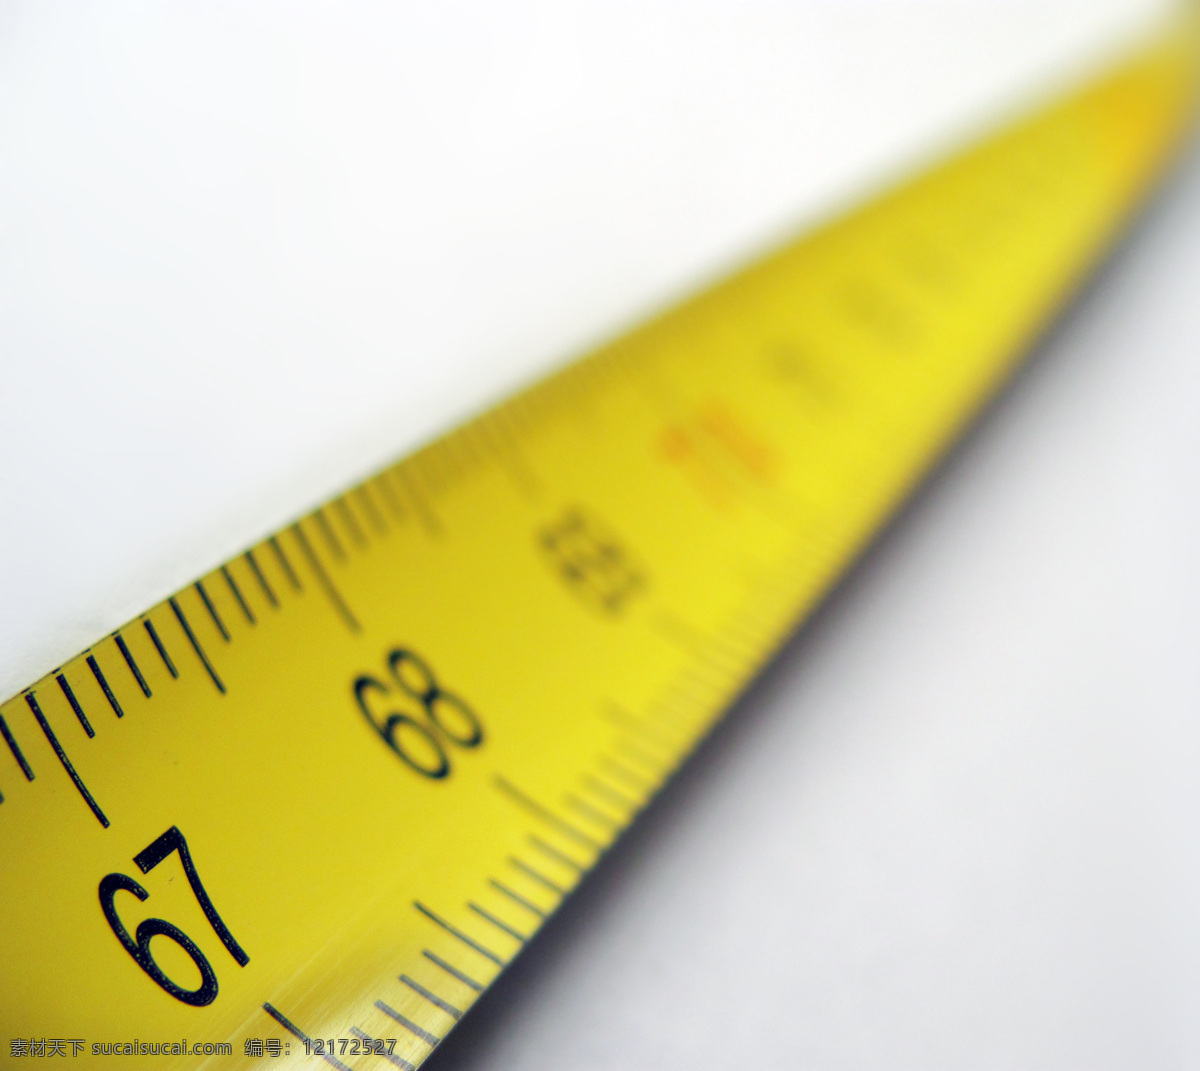 标杆 测量 尺子 创意 创意图片 创意元素 法制 卷尺 直尺 衡量 尺度 度量 水平 质量 生活素材 生活百科